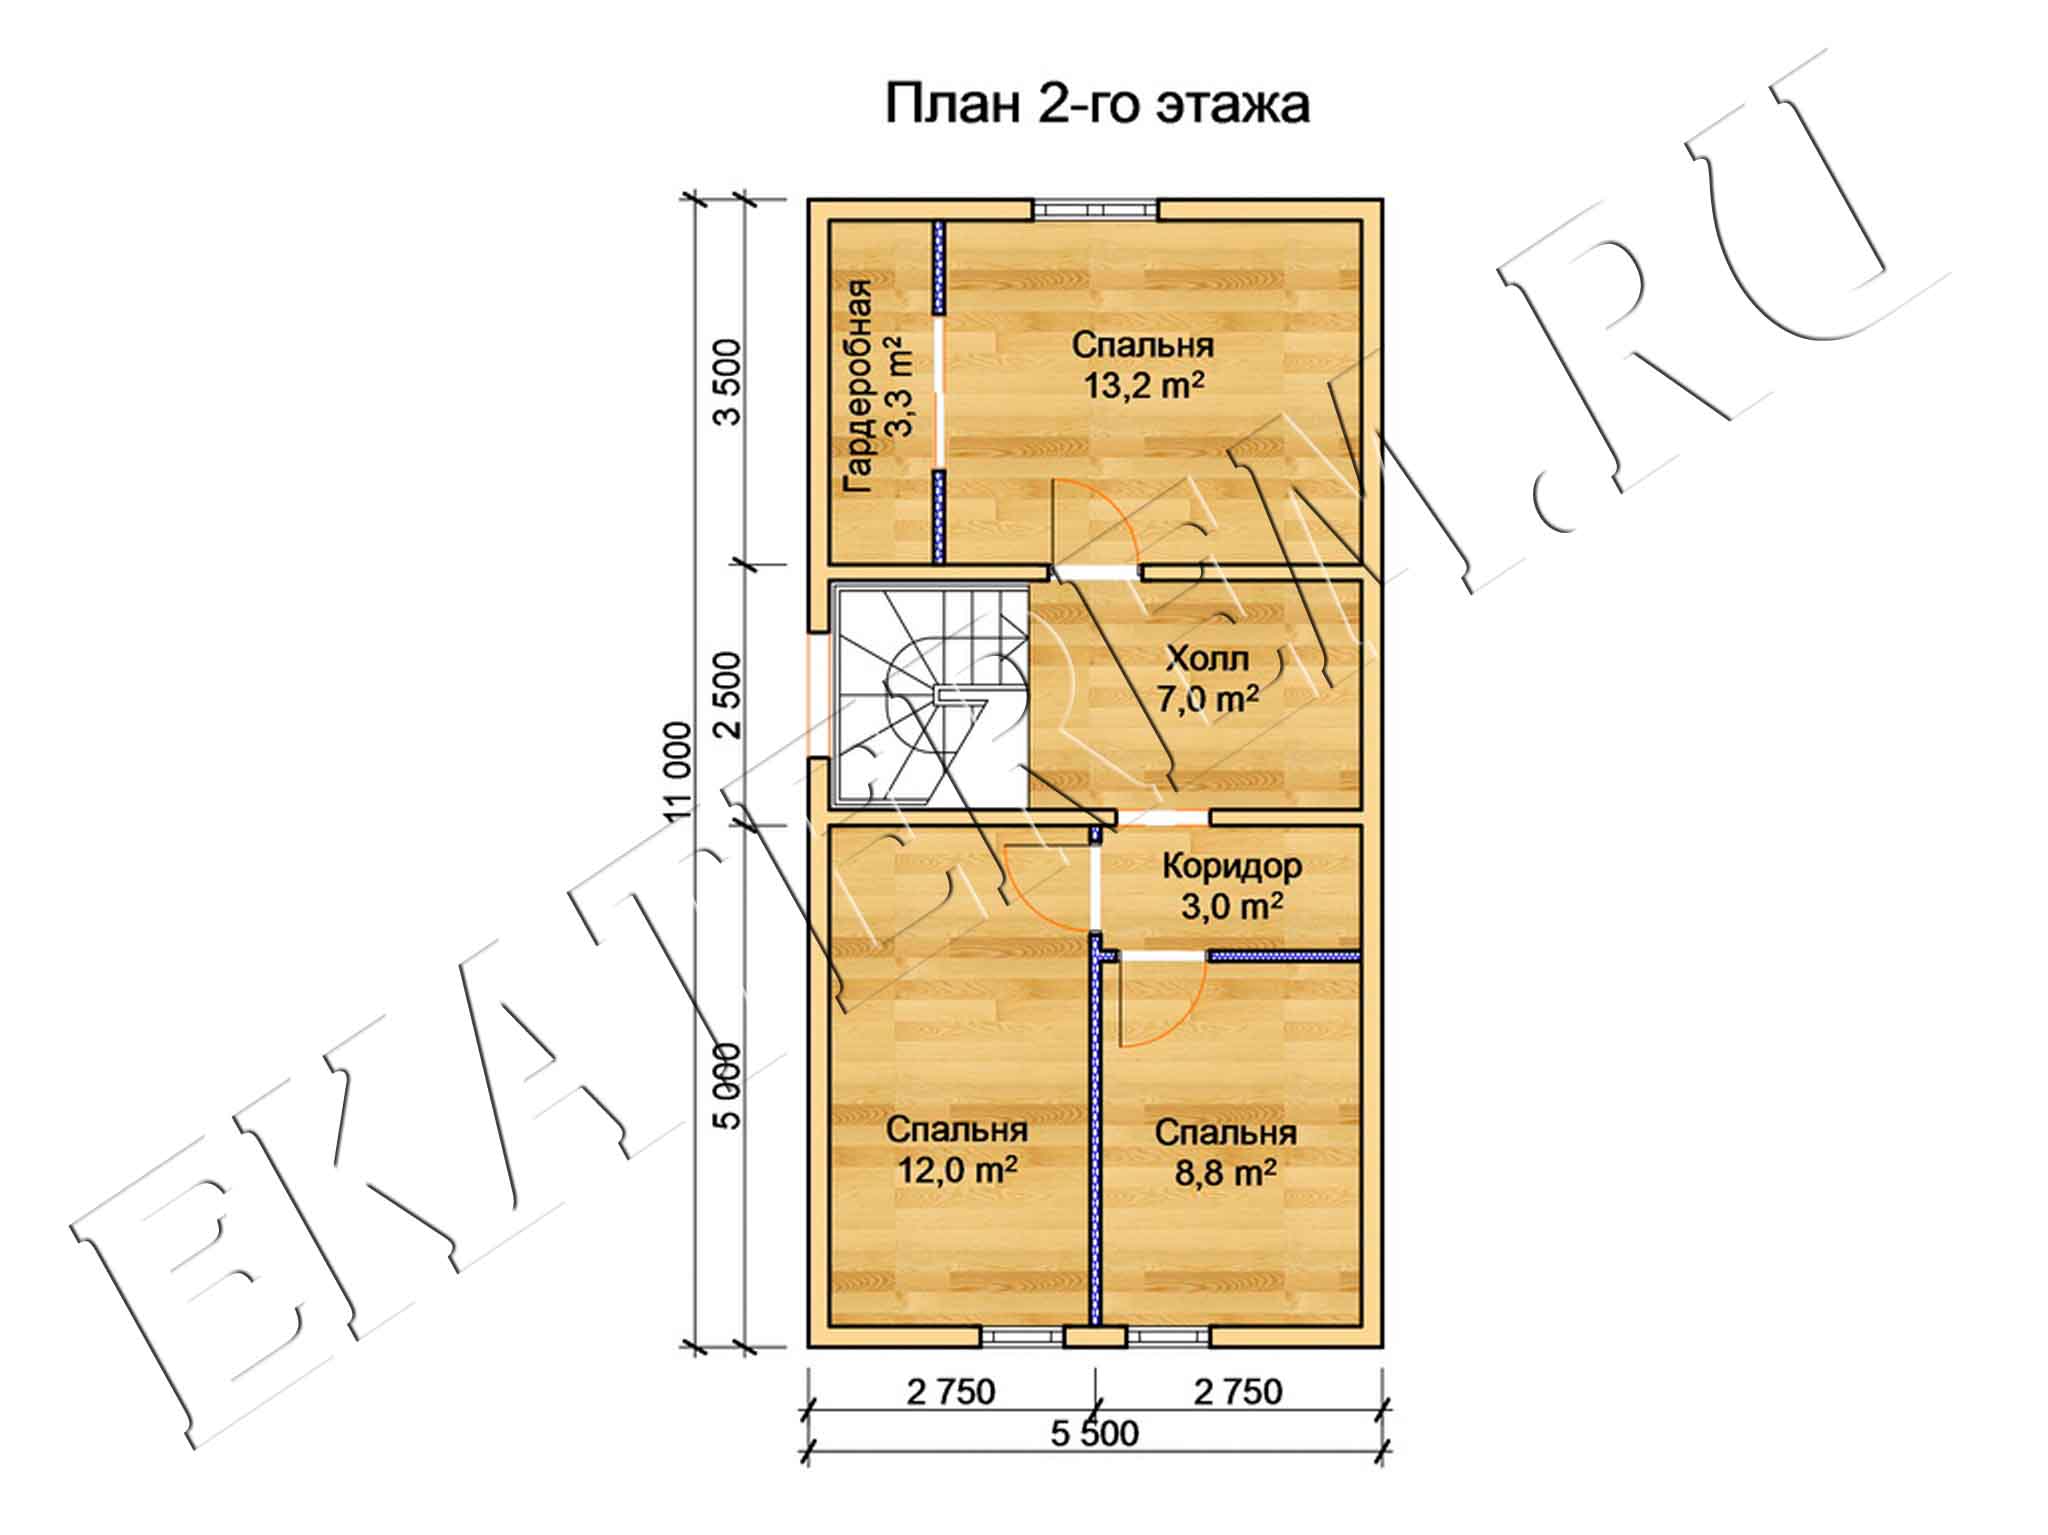 Особенности планировки дома площадью 25 кв.м